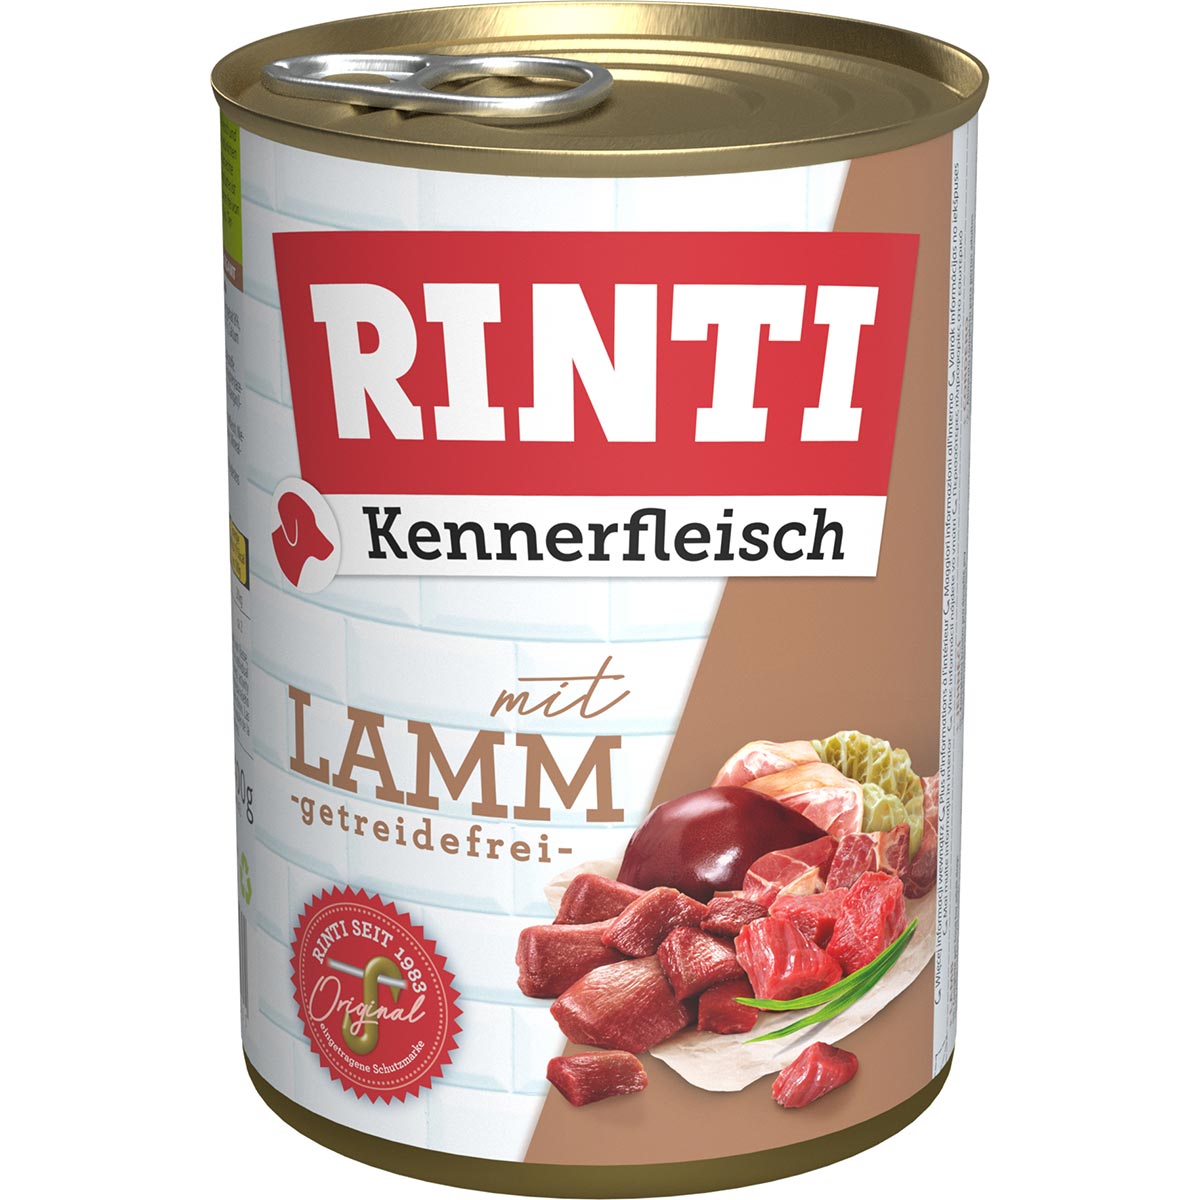 Rinti Kennerfleisch mit Lamm 24x400g